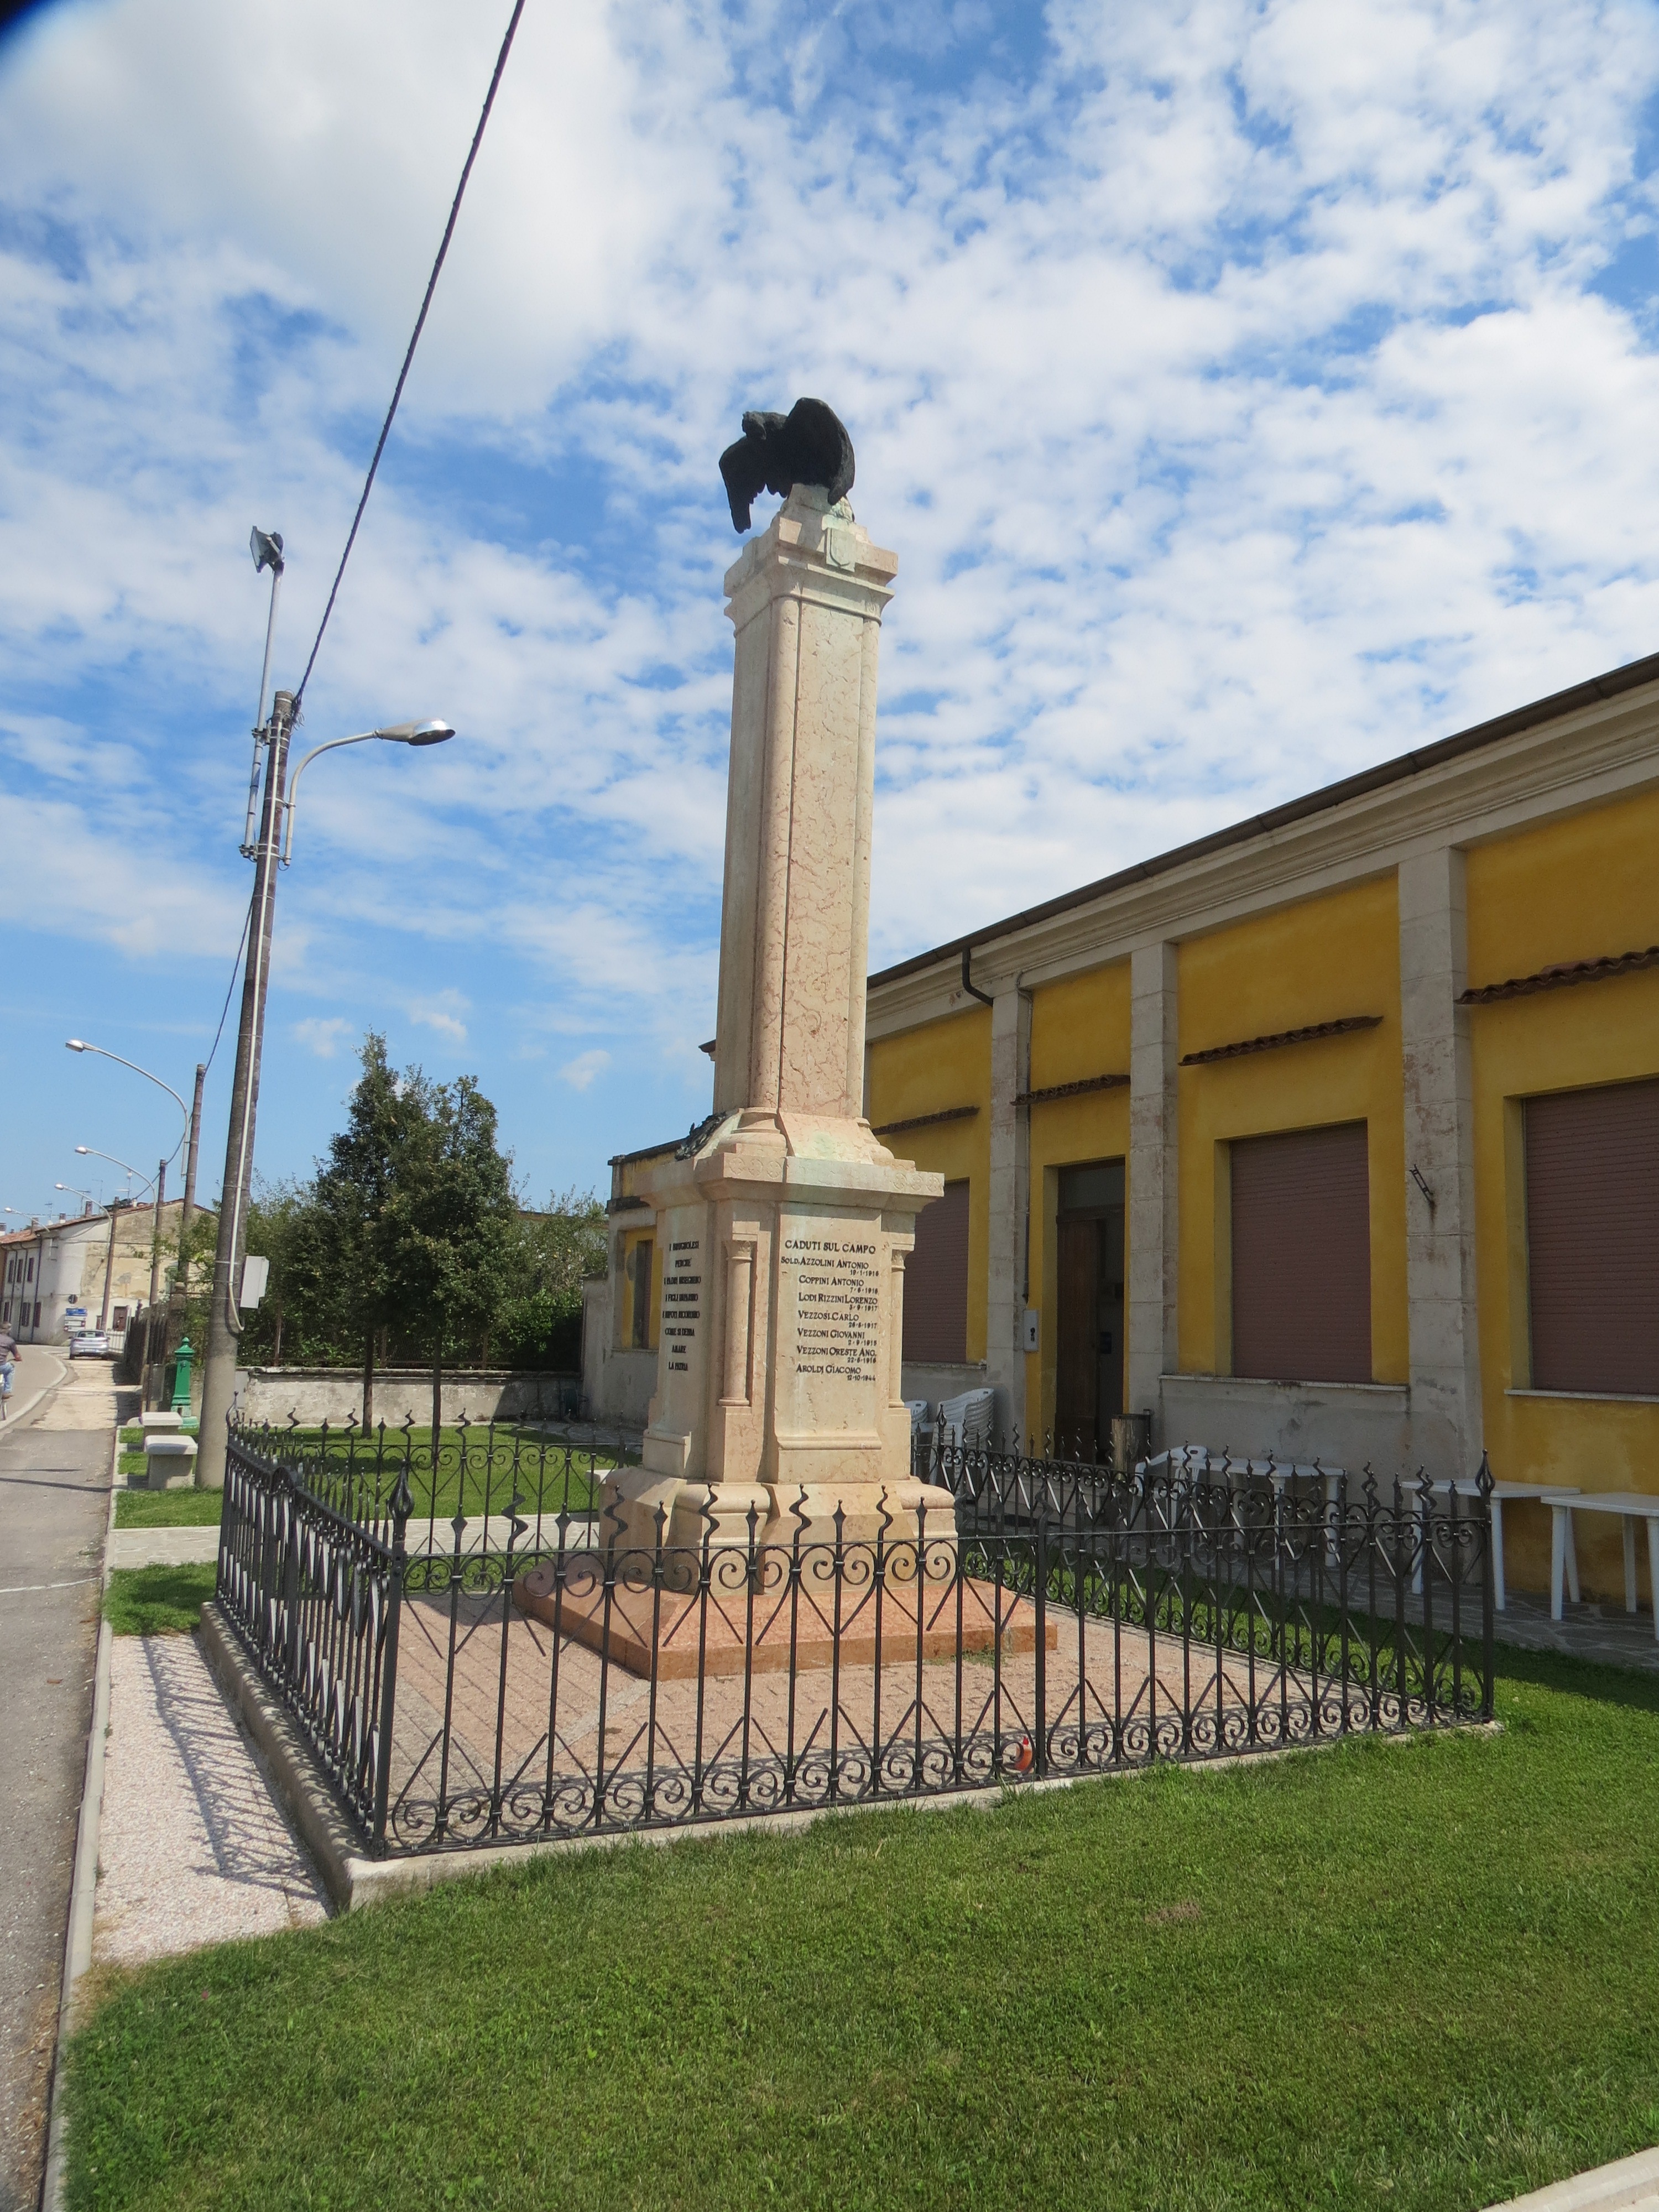 allegoria della Vittoria come aquila (statua sulla sommità) (monumento ai caduti - ad obelisco) - ambito italiano (sec. XX)